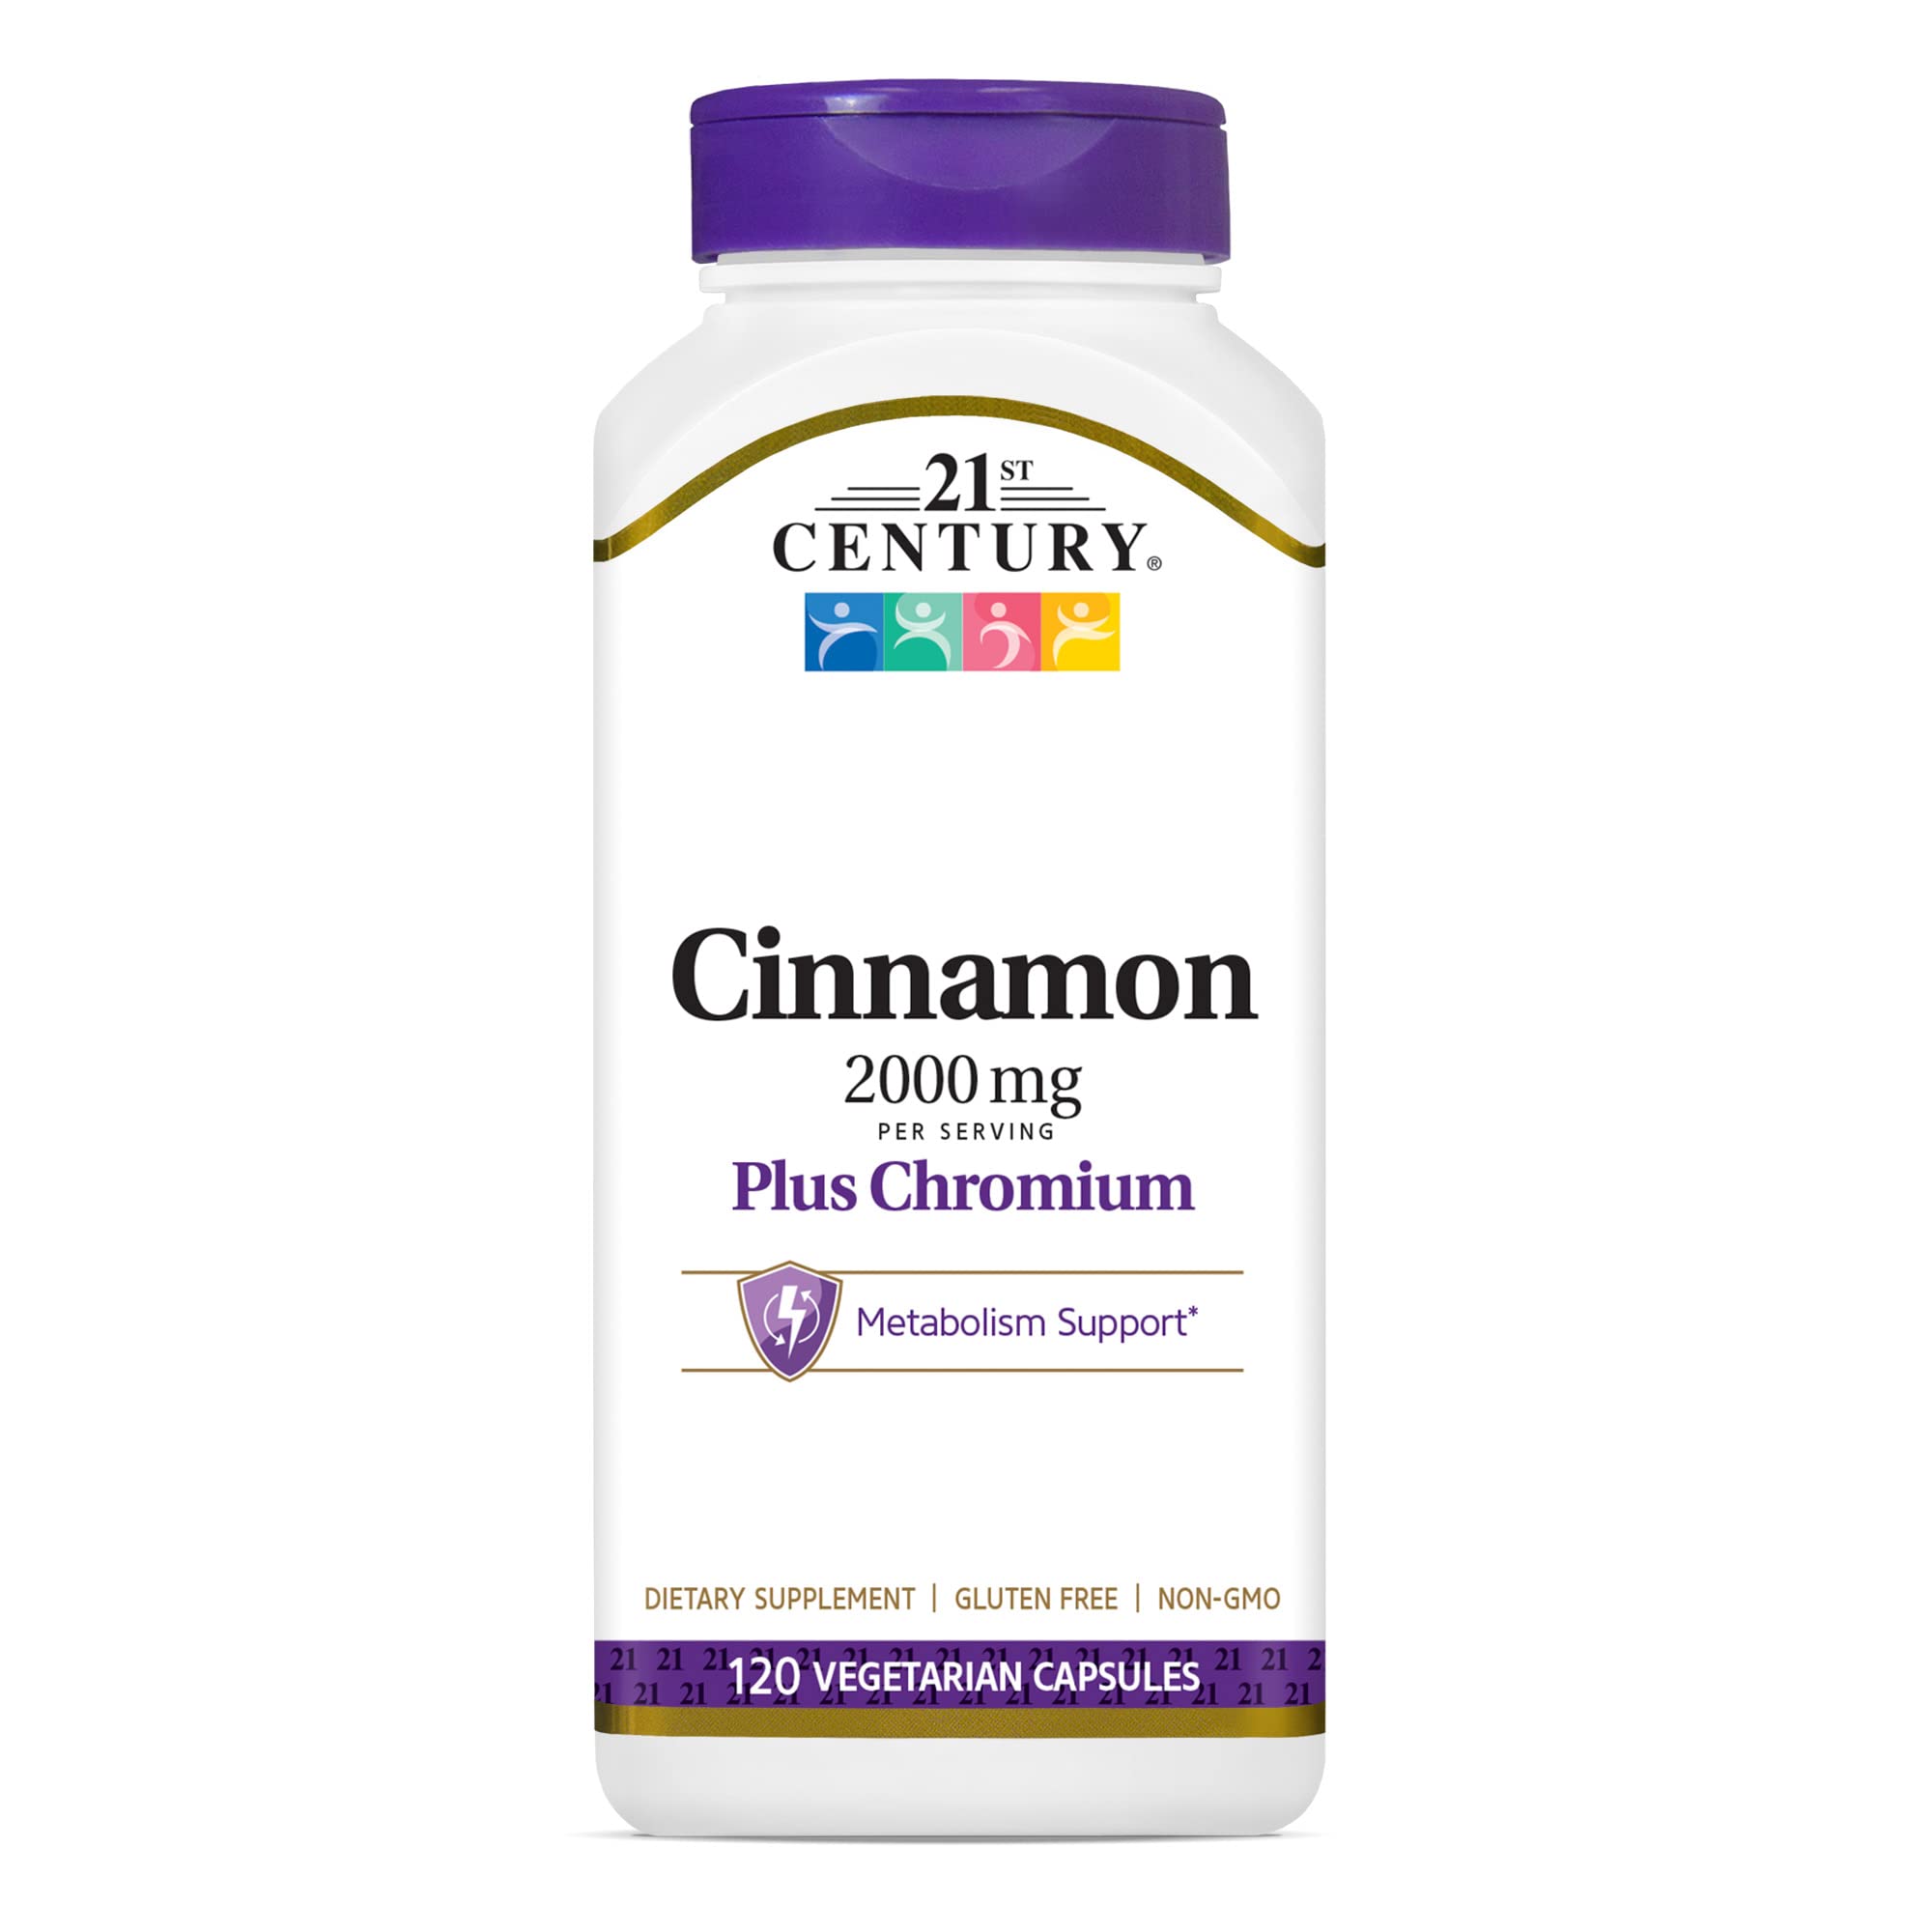 21st Century Cinnamon 2000 mg Per Serving Plus Chromium Vegetarian Capsules 120 count